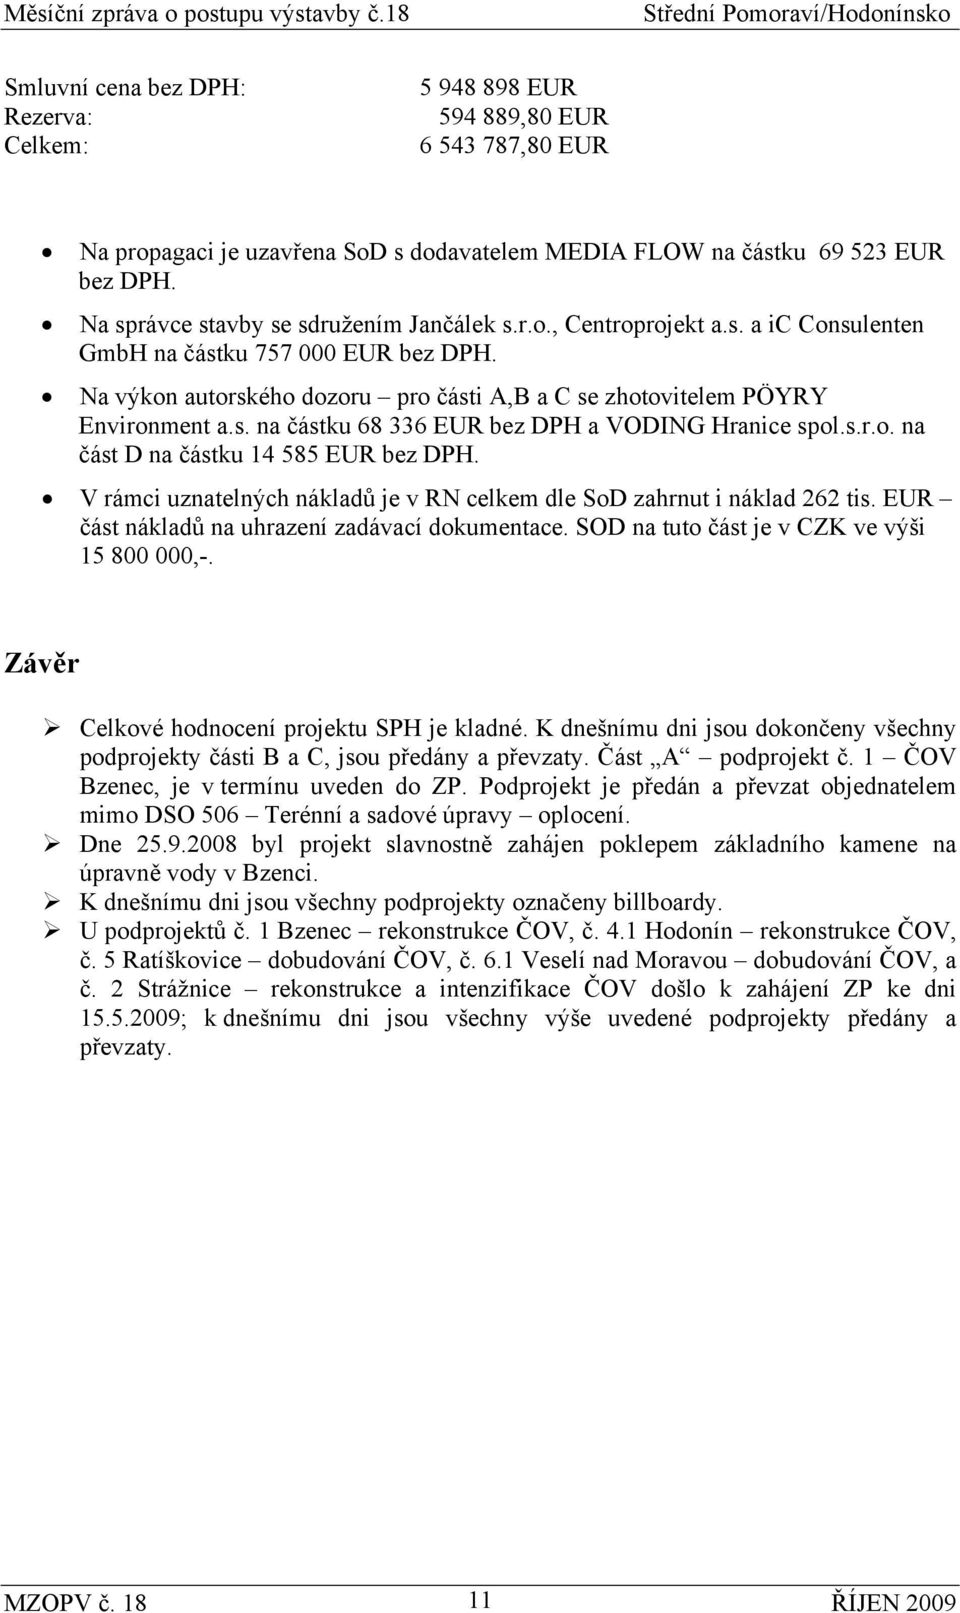 Na výkon autorského dozoru pro části A,B a C se zhotovitelem PÖYRY Environment a.s. na částku 68 336 EUR bez DPH a VODING Hranice spol.s.r.o. na část D na částku 14 585 EUR bez DPH.